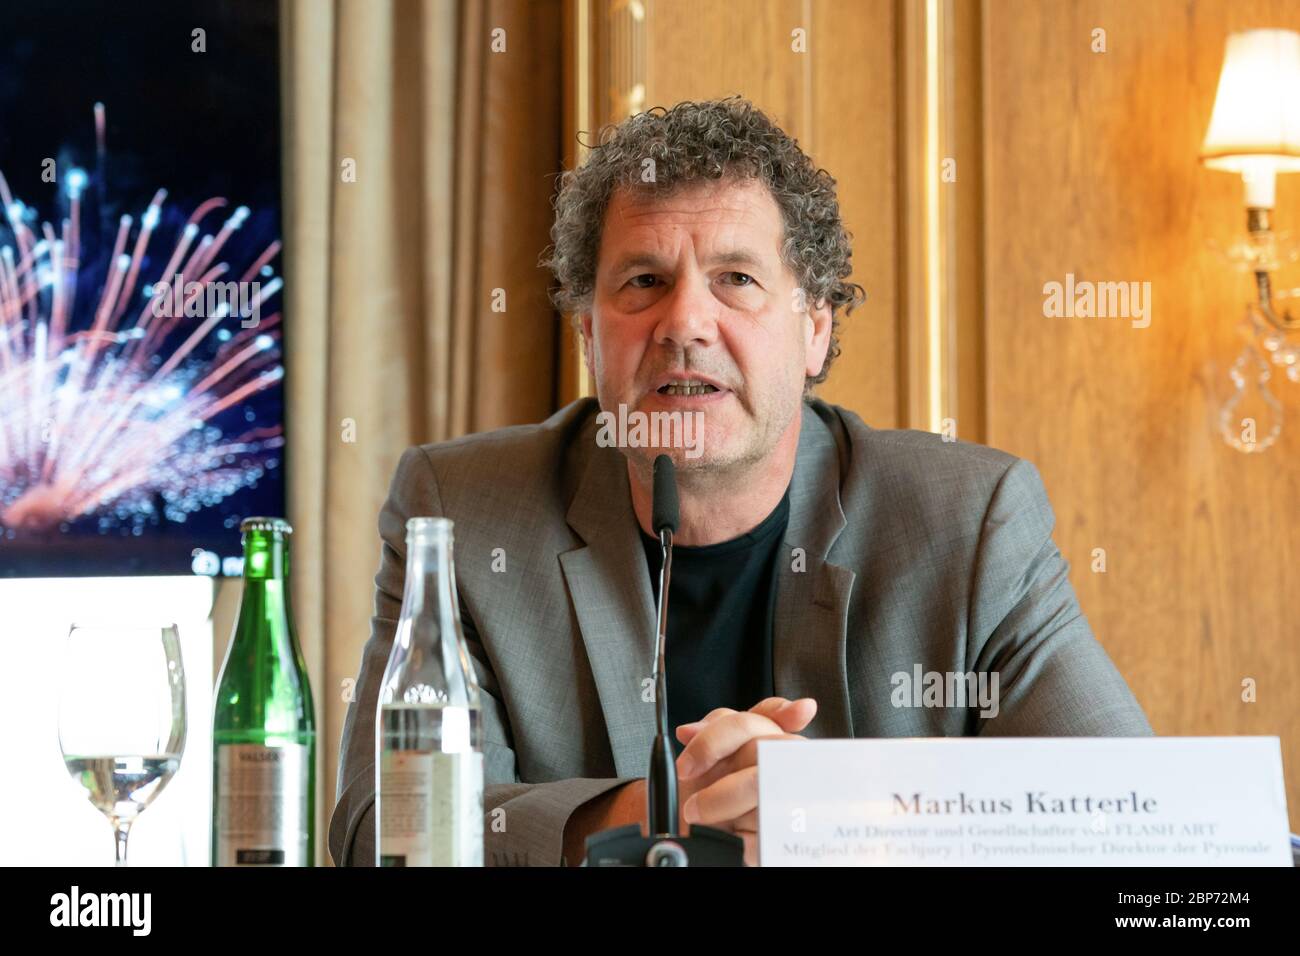 Markus Katterle (directeur artistique et partenaire de FLASH ART et directeur pyrotechnique de la Pyronale) à la conférence de presse pour la Pyronale 2019, la devise du 14e Championnat du monde de feux d'artifice est « Best of six » à l'hôtel Regent. Banque D'Images